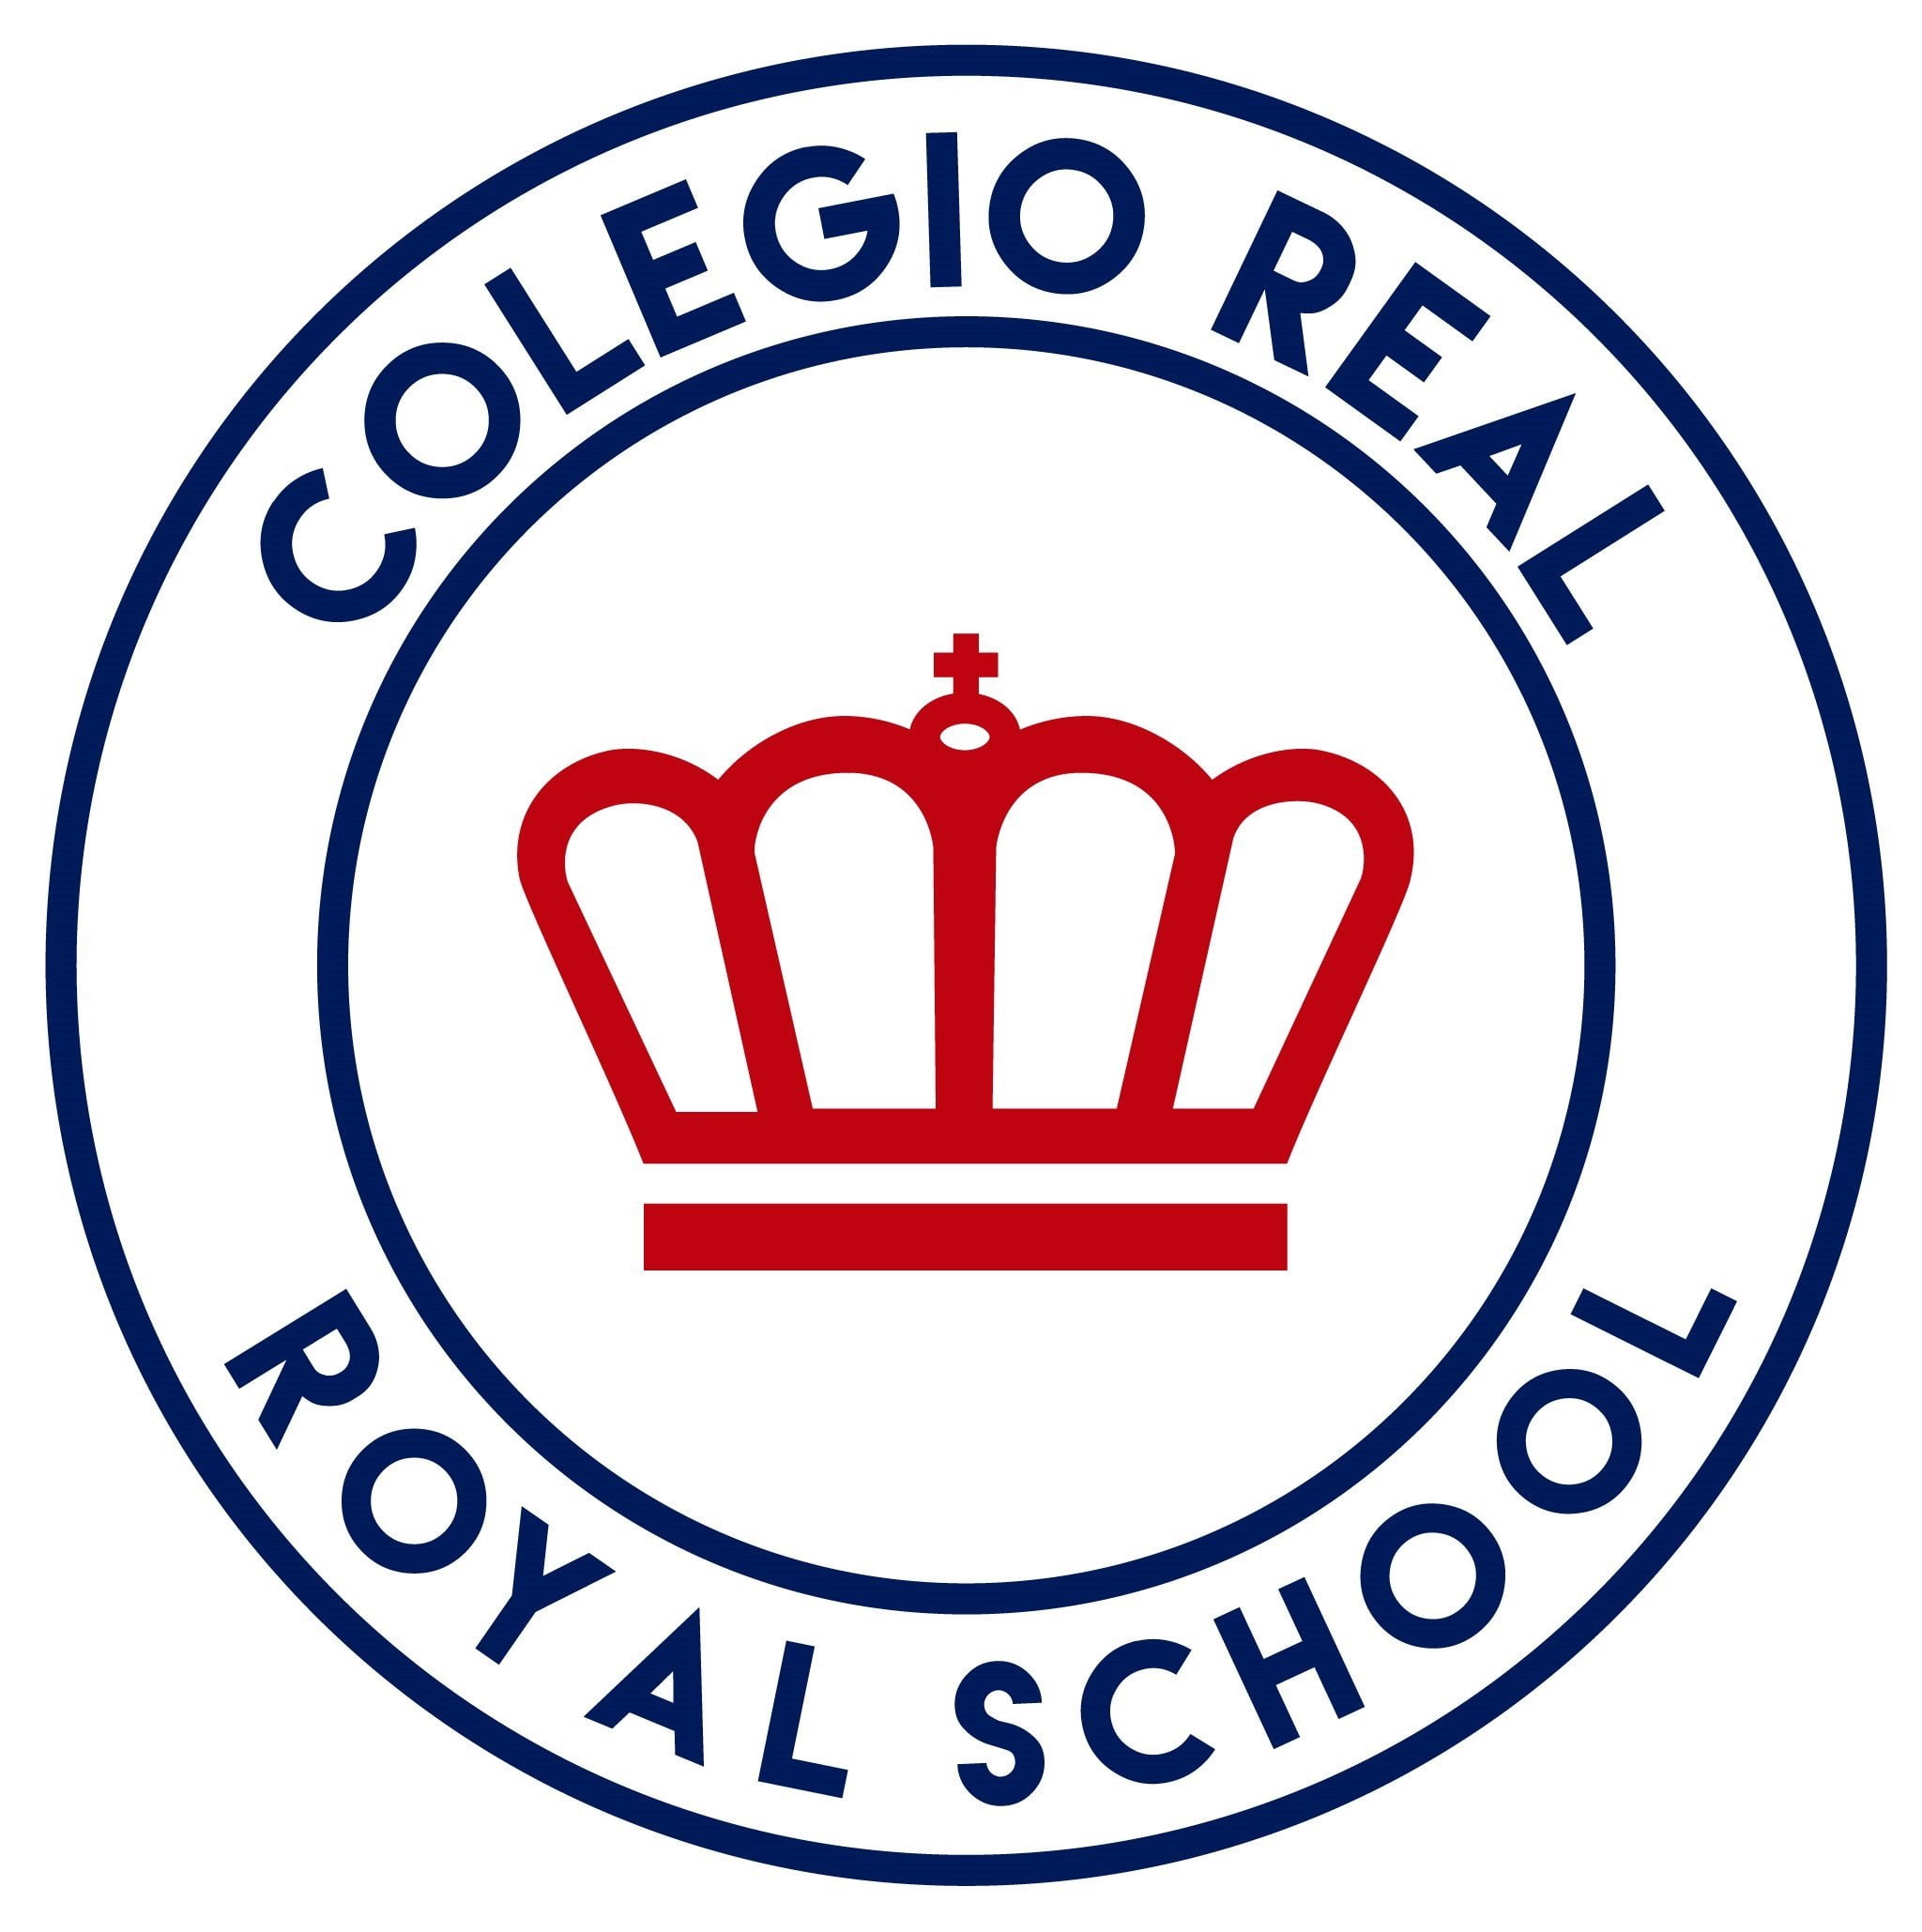 Colegio Real Royal School (Barranquilla) Logo